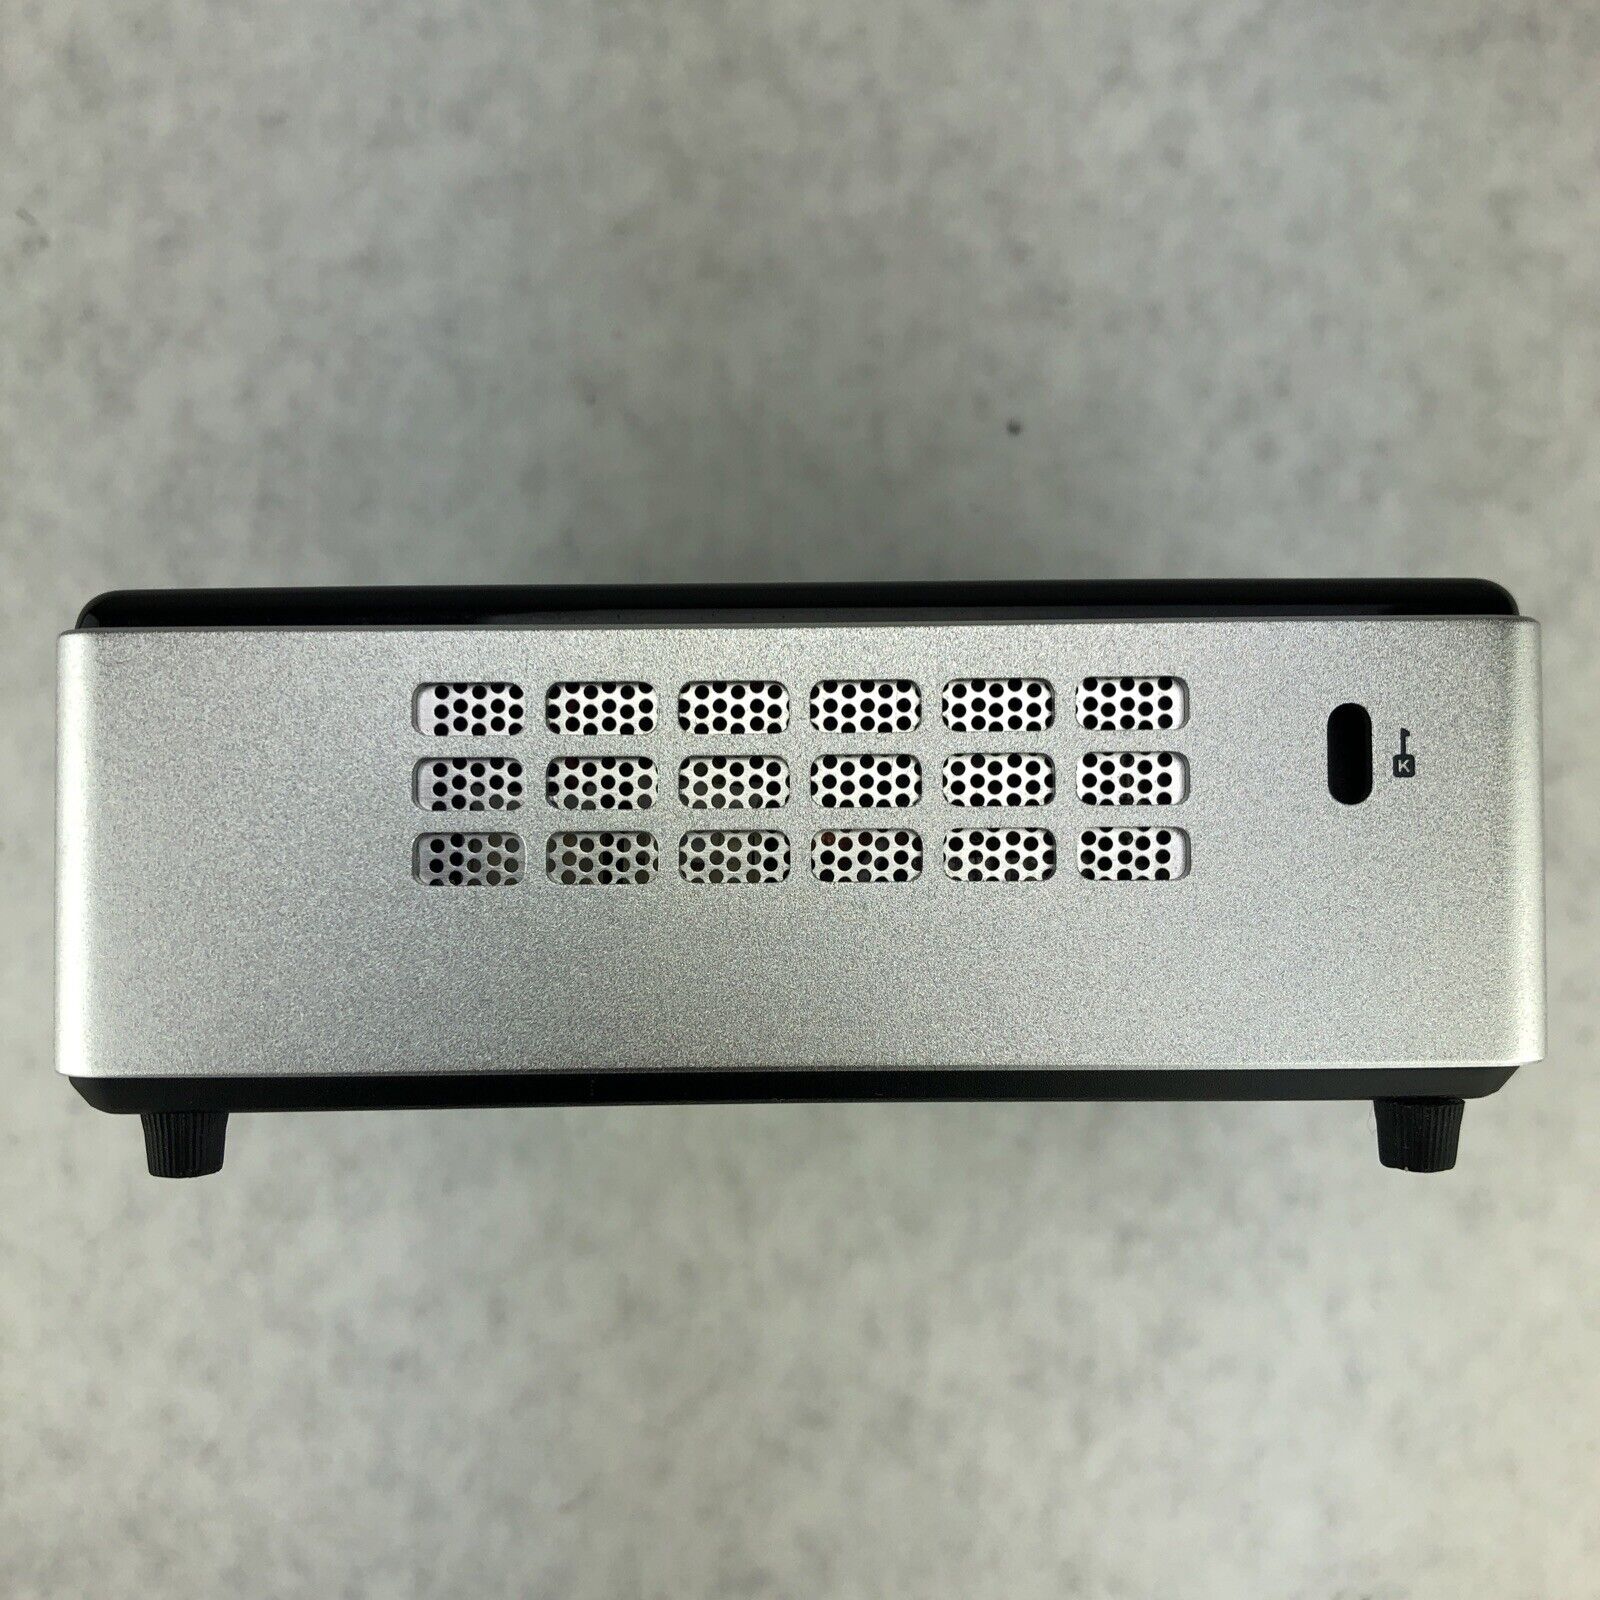 ZOTAC ZBOX-MI521NXS-U Mini i3-4030U 1.90GHz 4GB RAM WiFi No SSD No AC Adapter